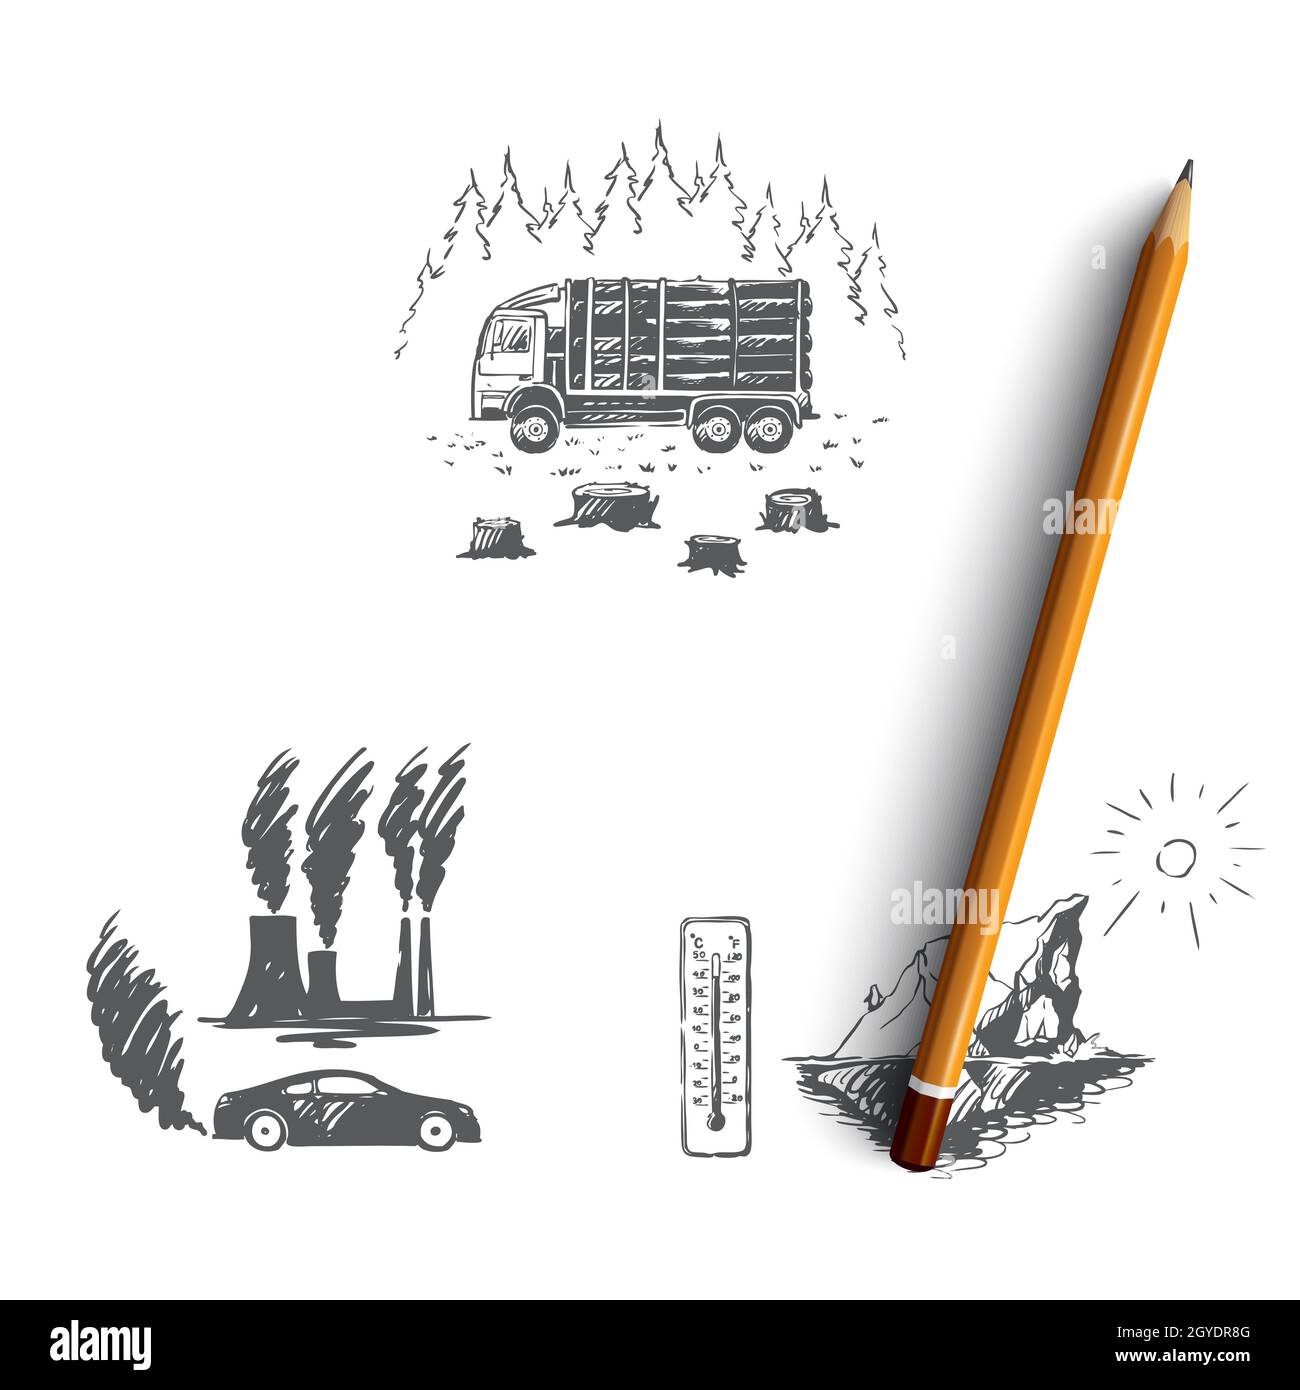 Globale Erwärmung - Fabrik Verschmutzung, Eisberg Schmelzen, Schneiden von Bäumen Vektor-Konzept gesetzt. Von Hand gezeichnete Skizze isolierte Illustration Stockfoto